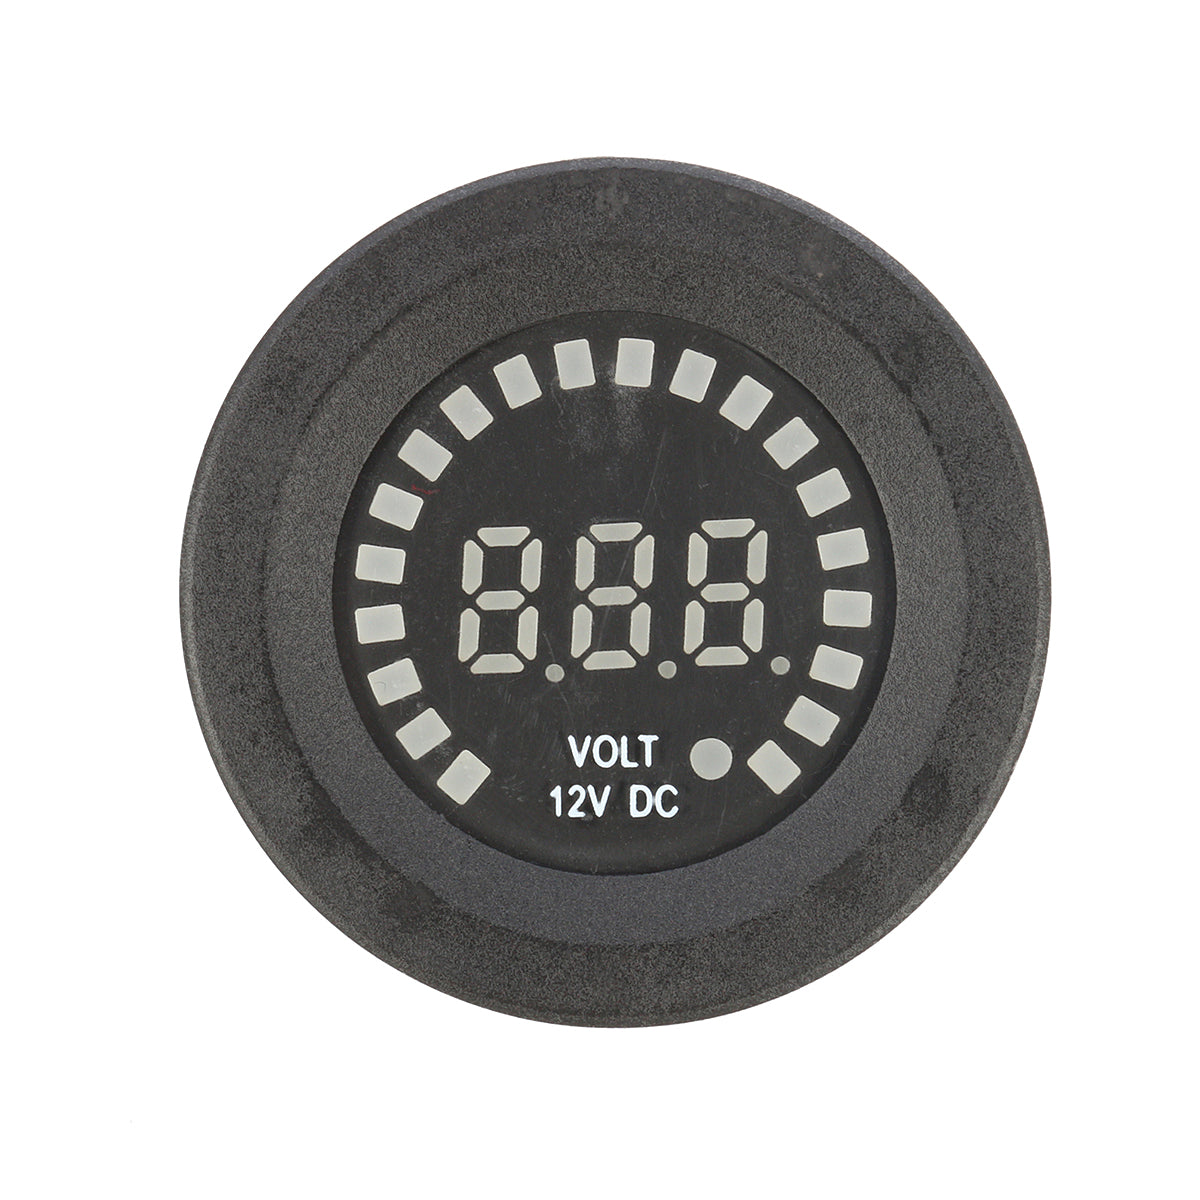 12V LED Digital Voltage Socket Meter Display Auto Car Motorcycle Panel Volt Meterr